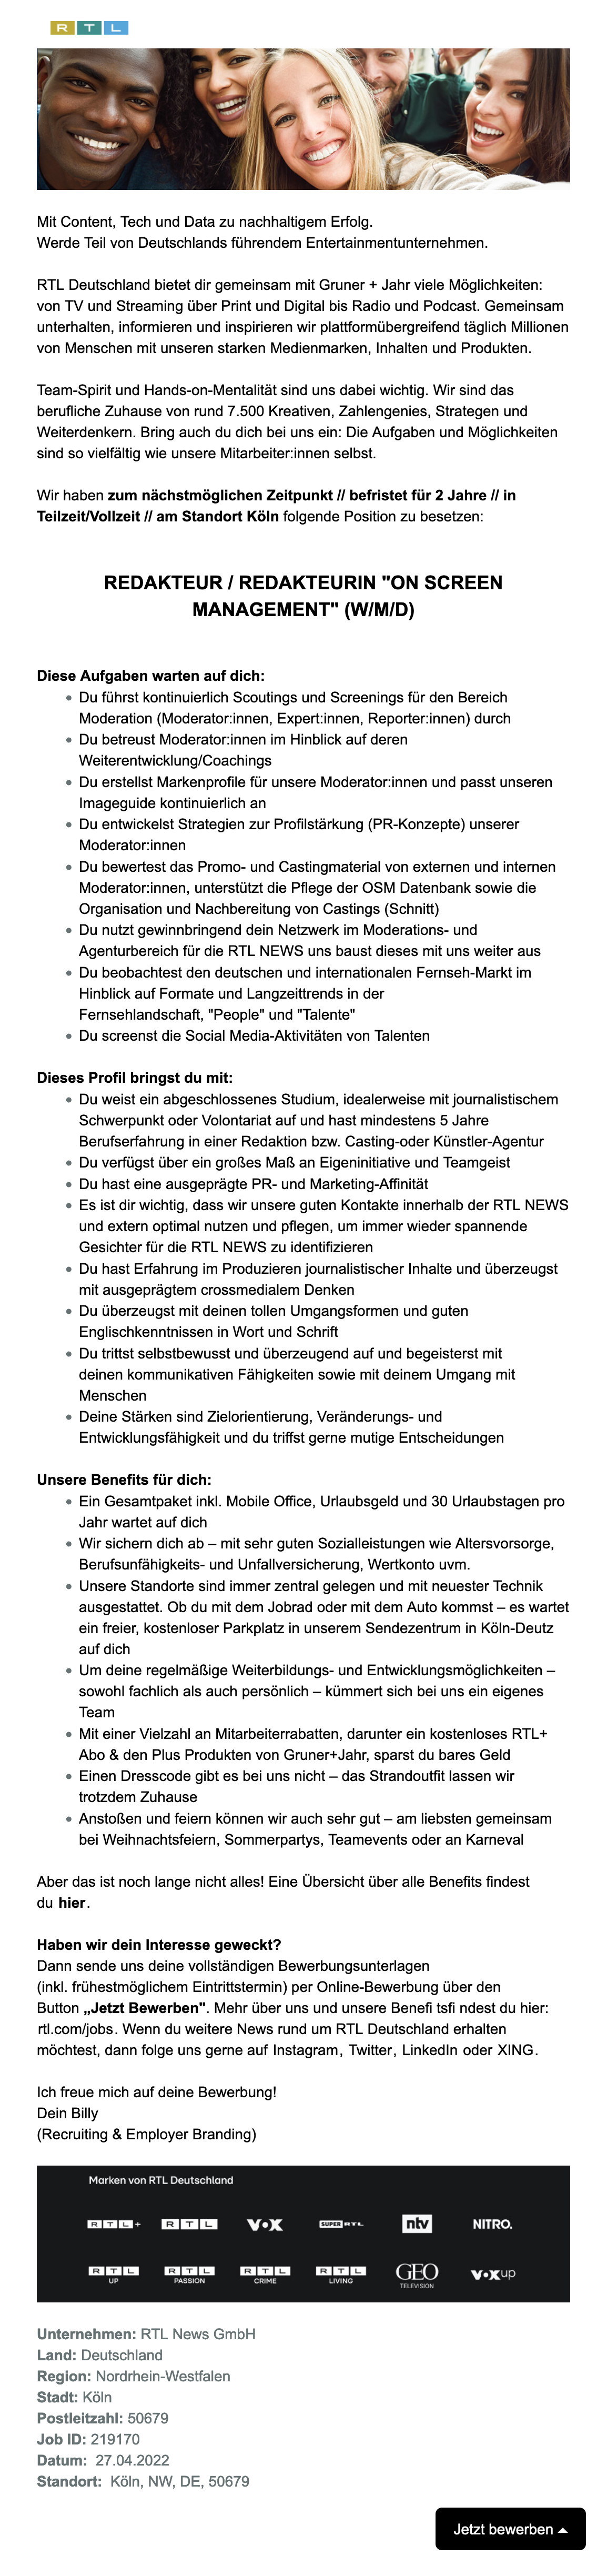 Redakteur - OnScreen Management (w/m/d) (RTL NEWS)